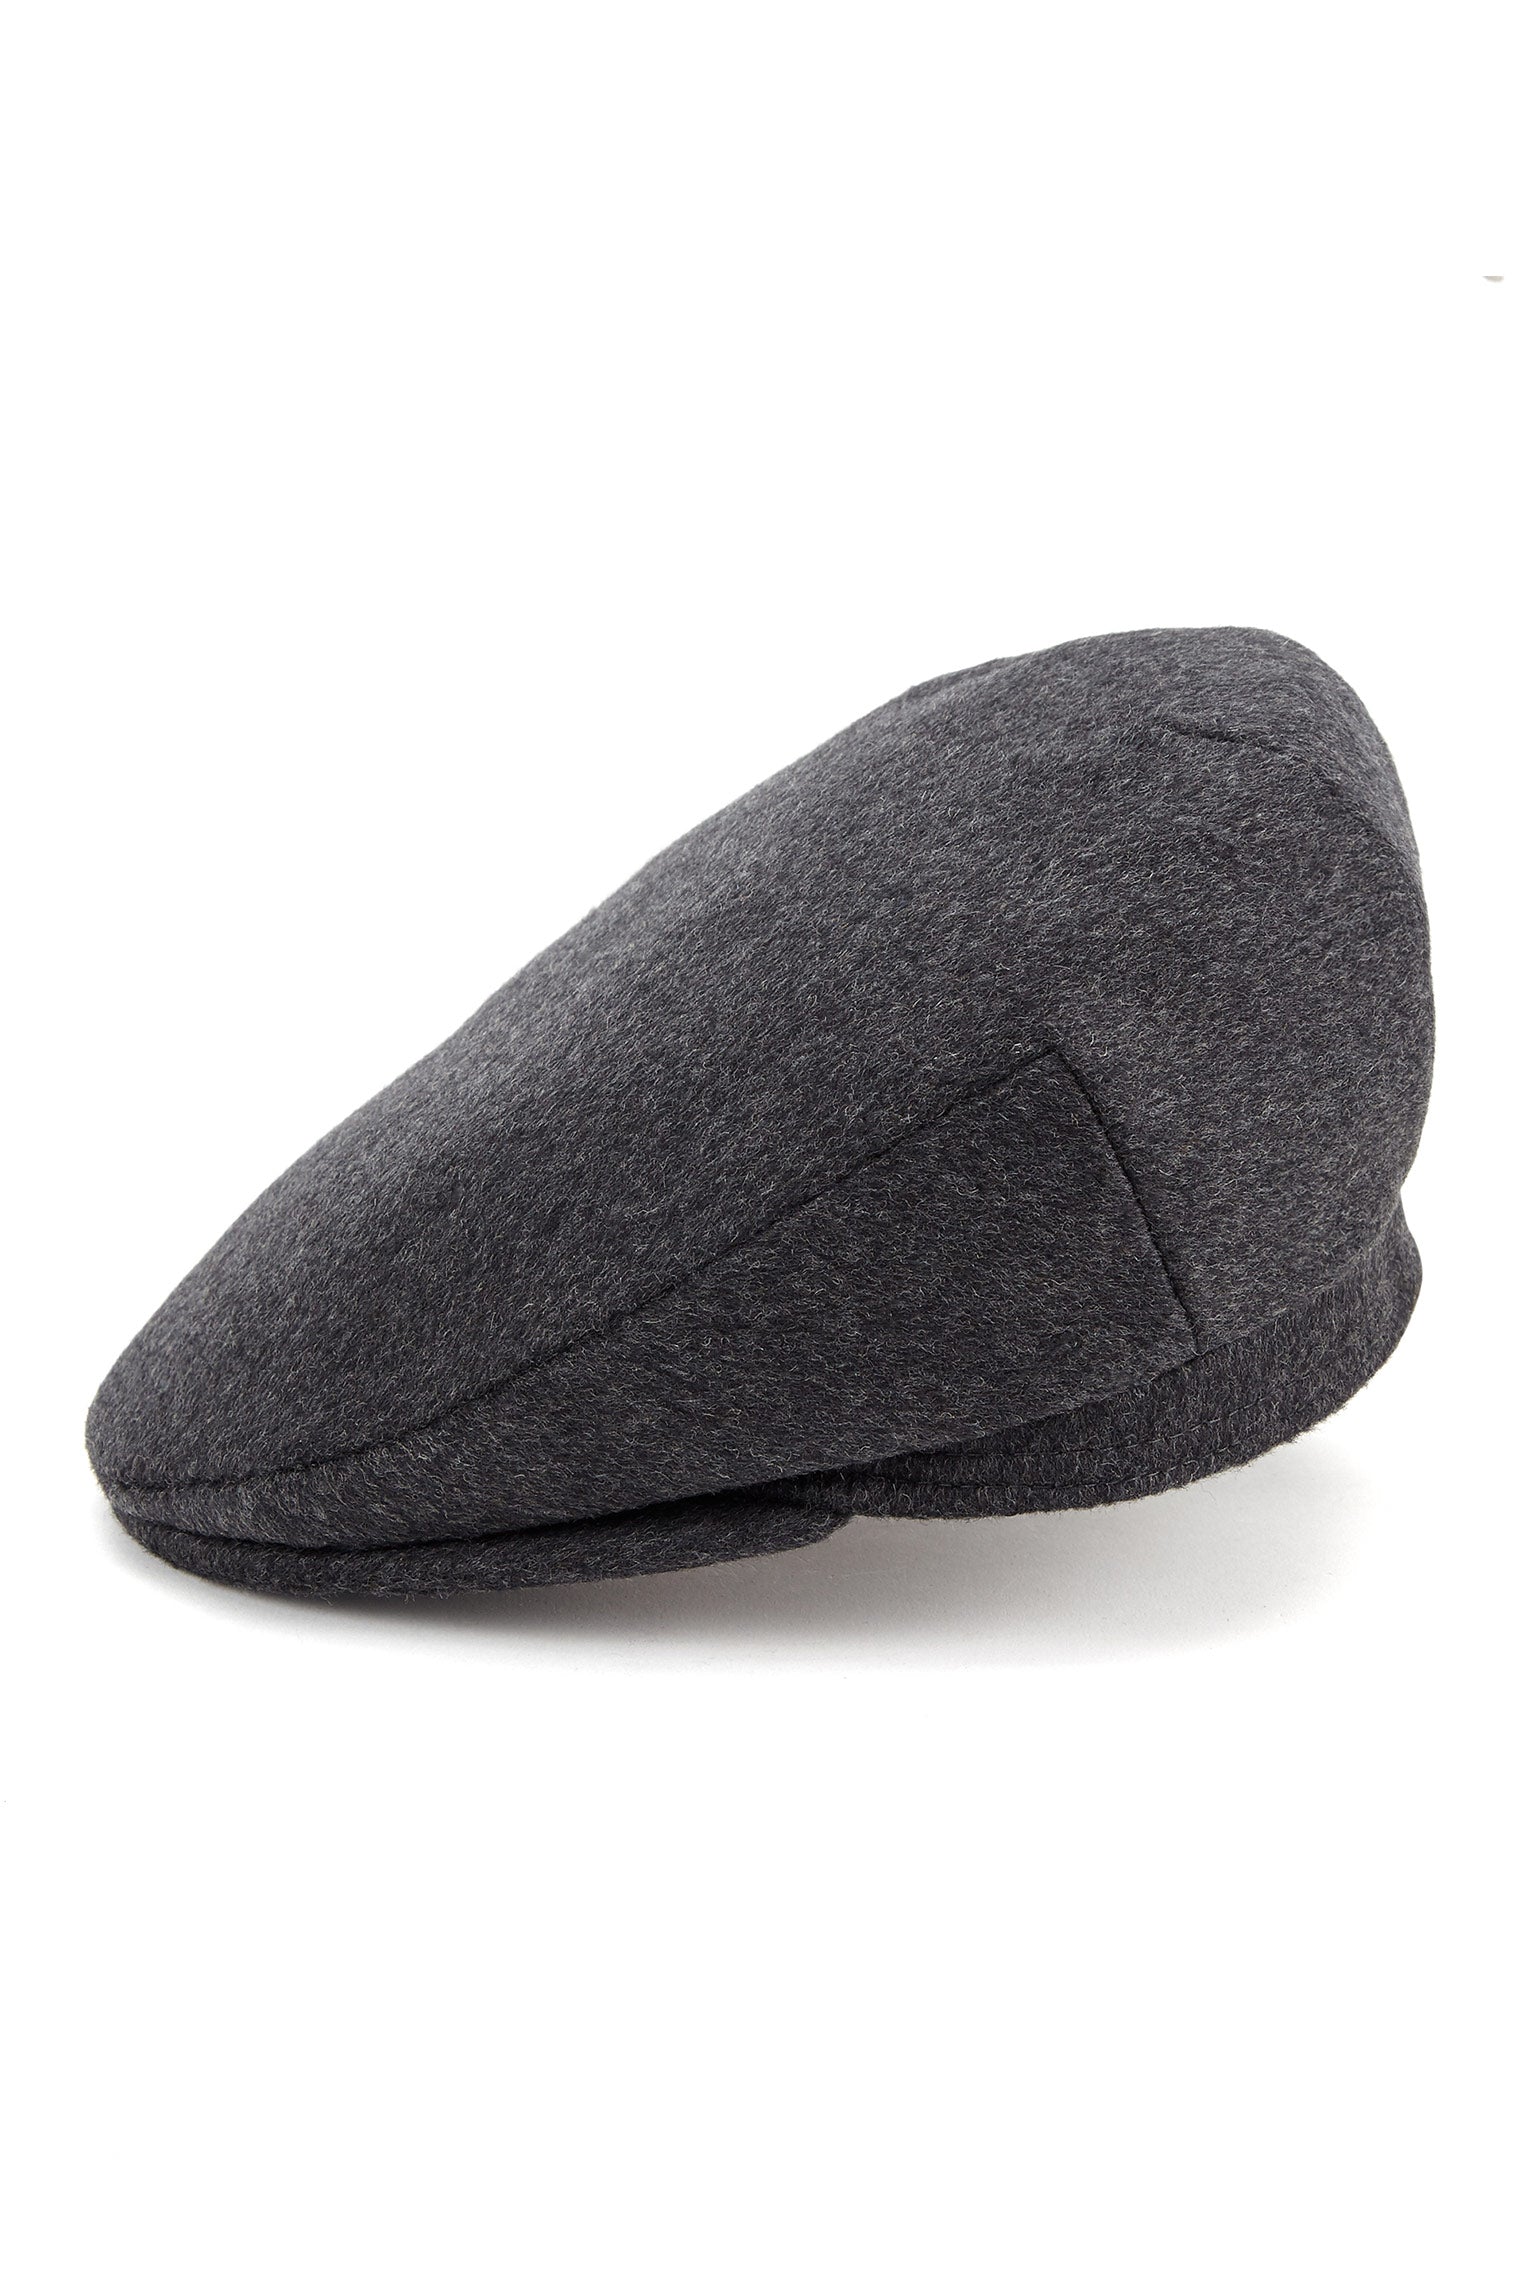 Oslo Tweed Flat Cap - All Ready to Wear - Lock & Co. Hatters London UK